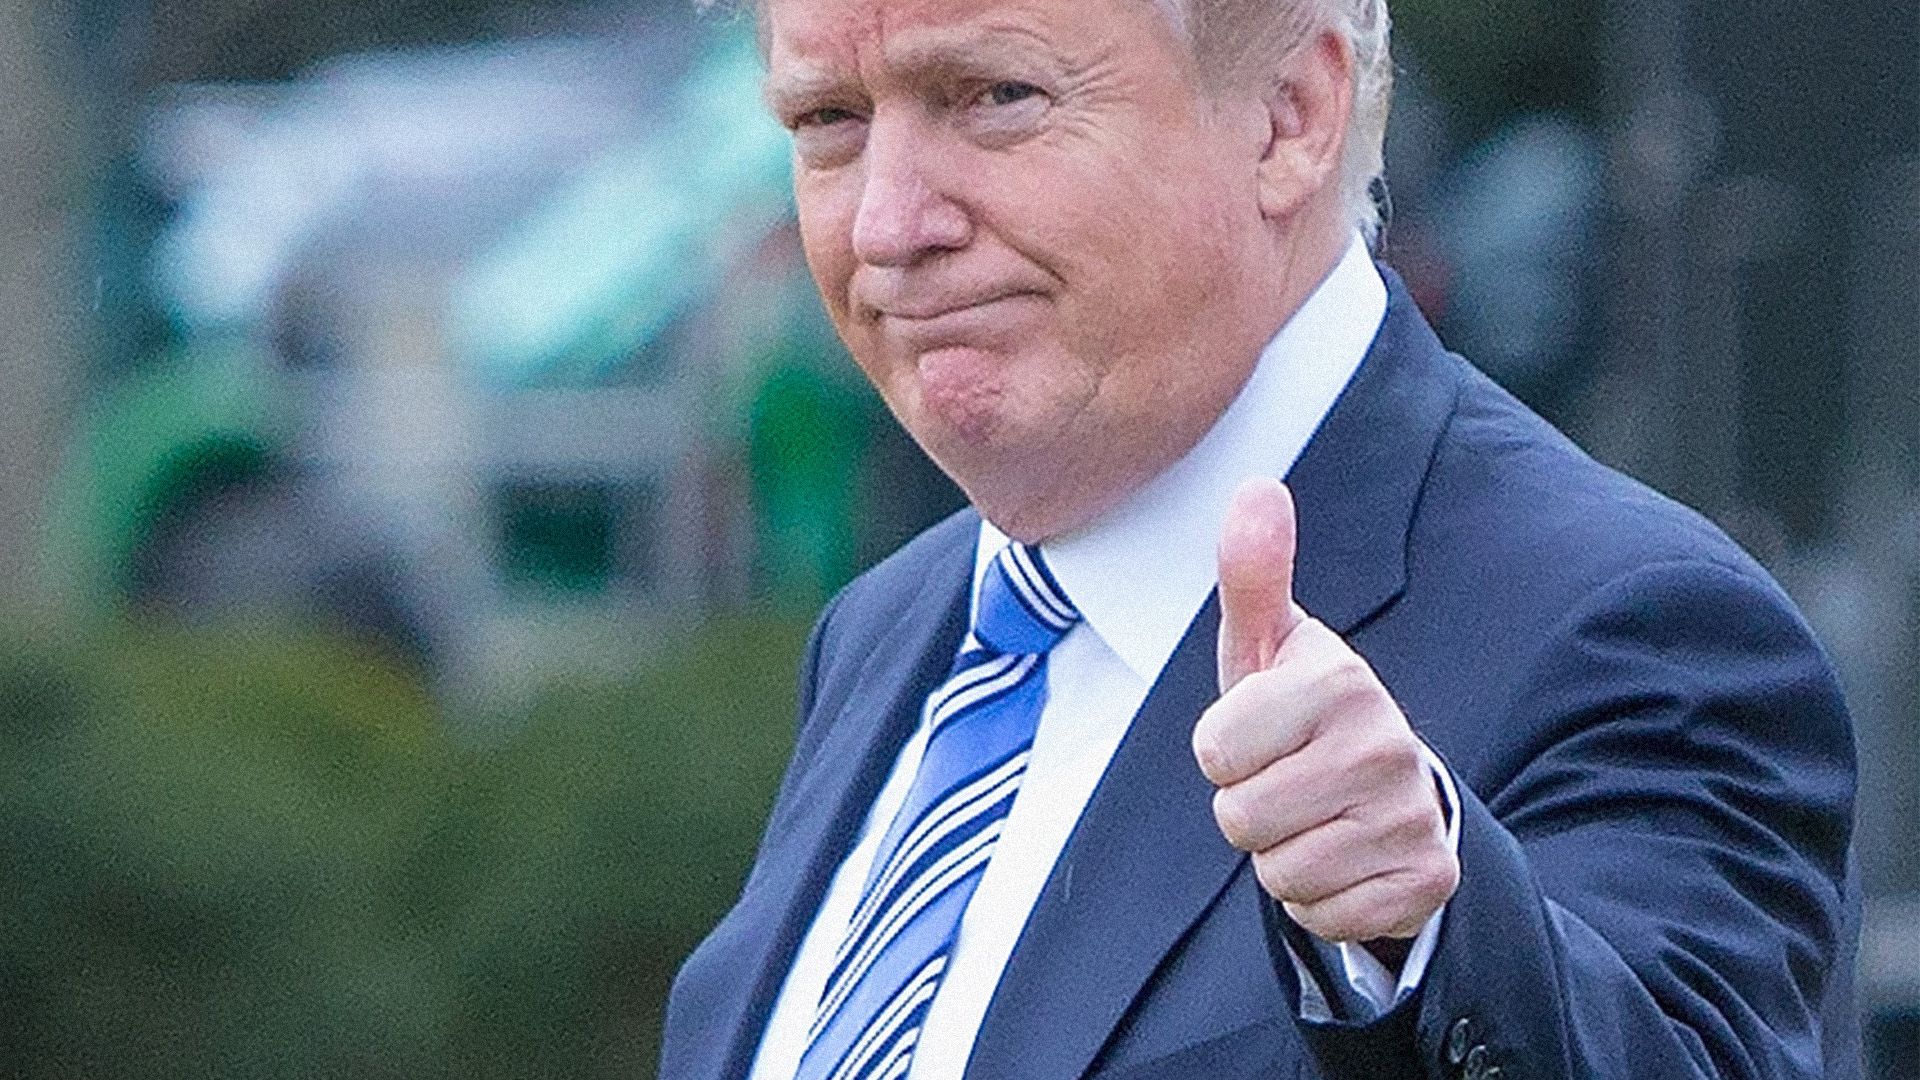 Trump thumbs up.